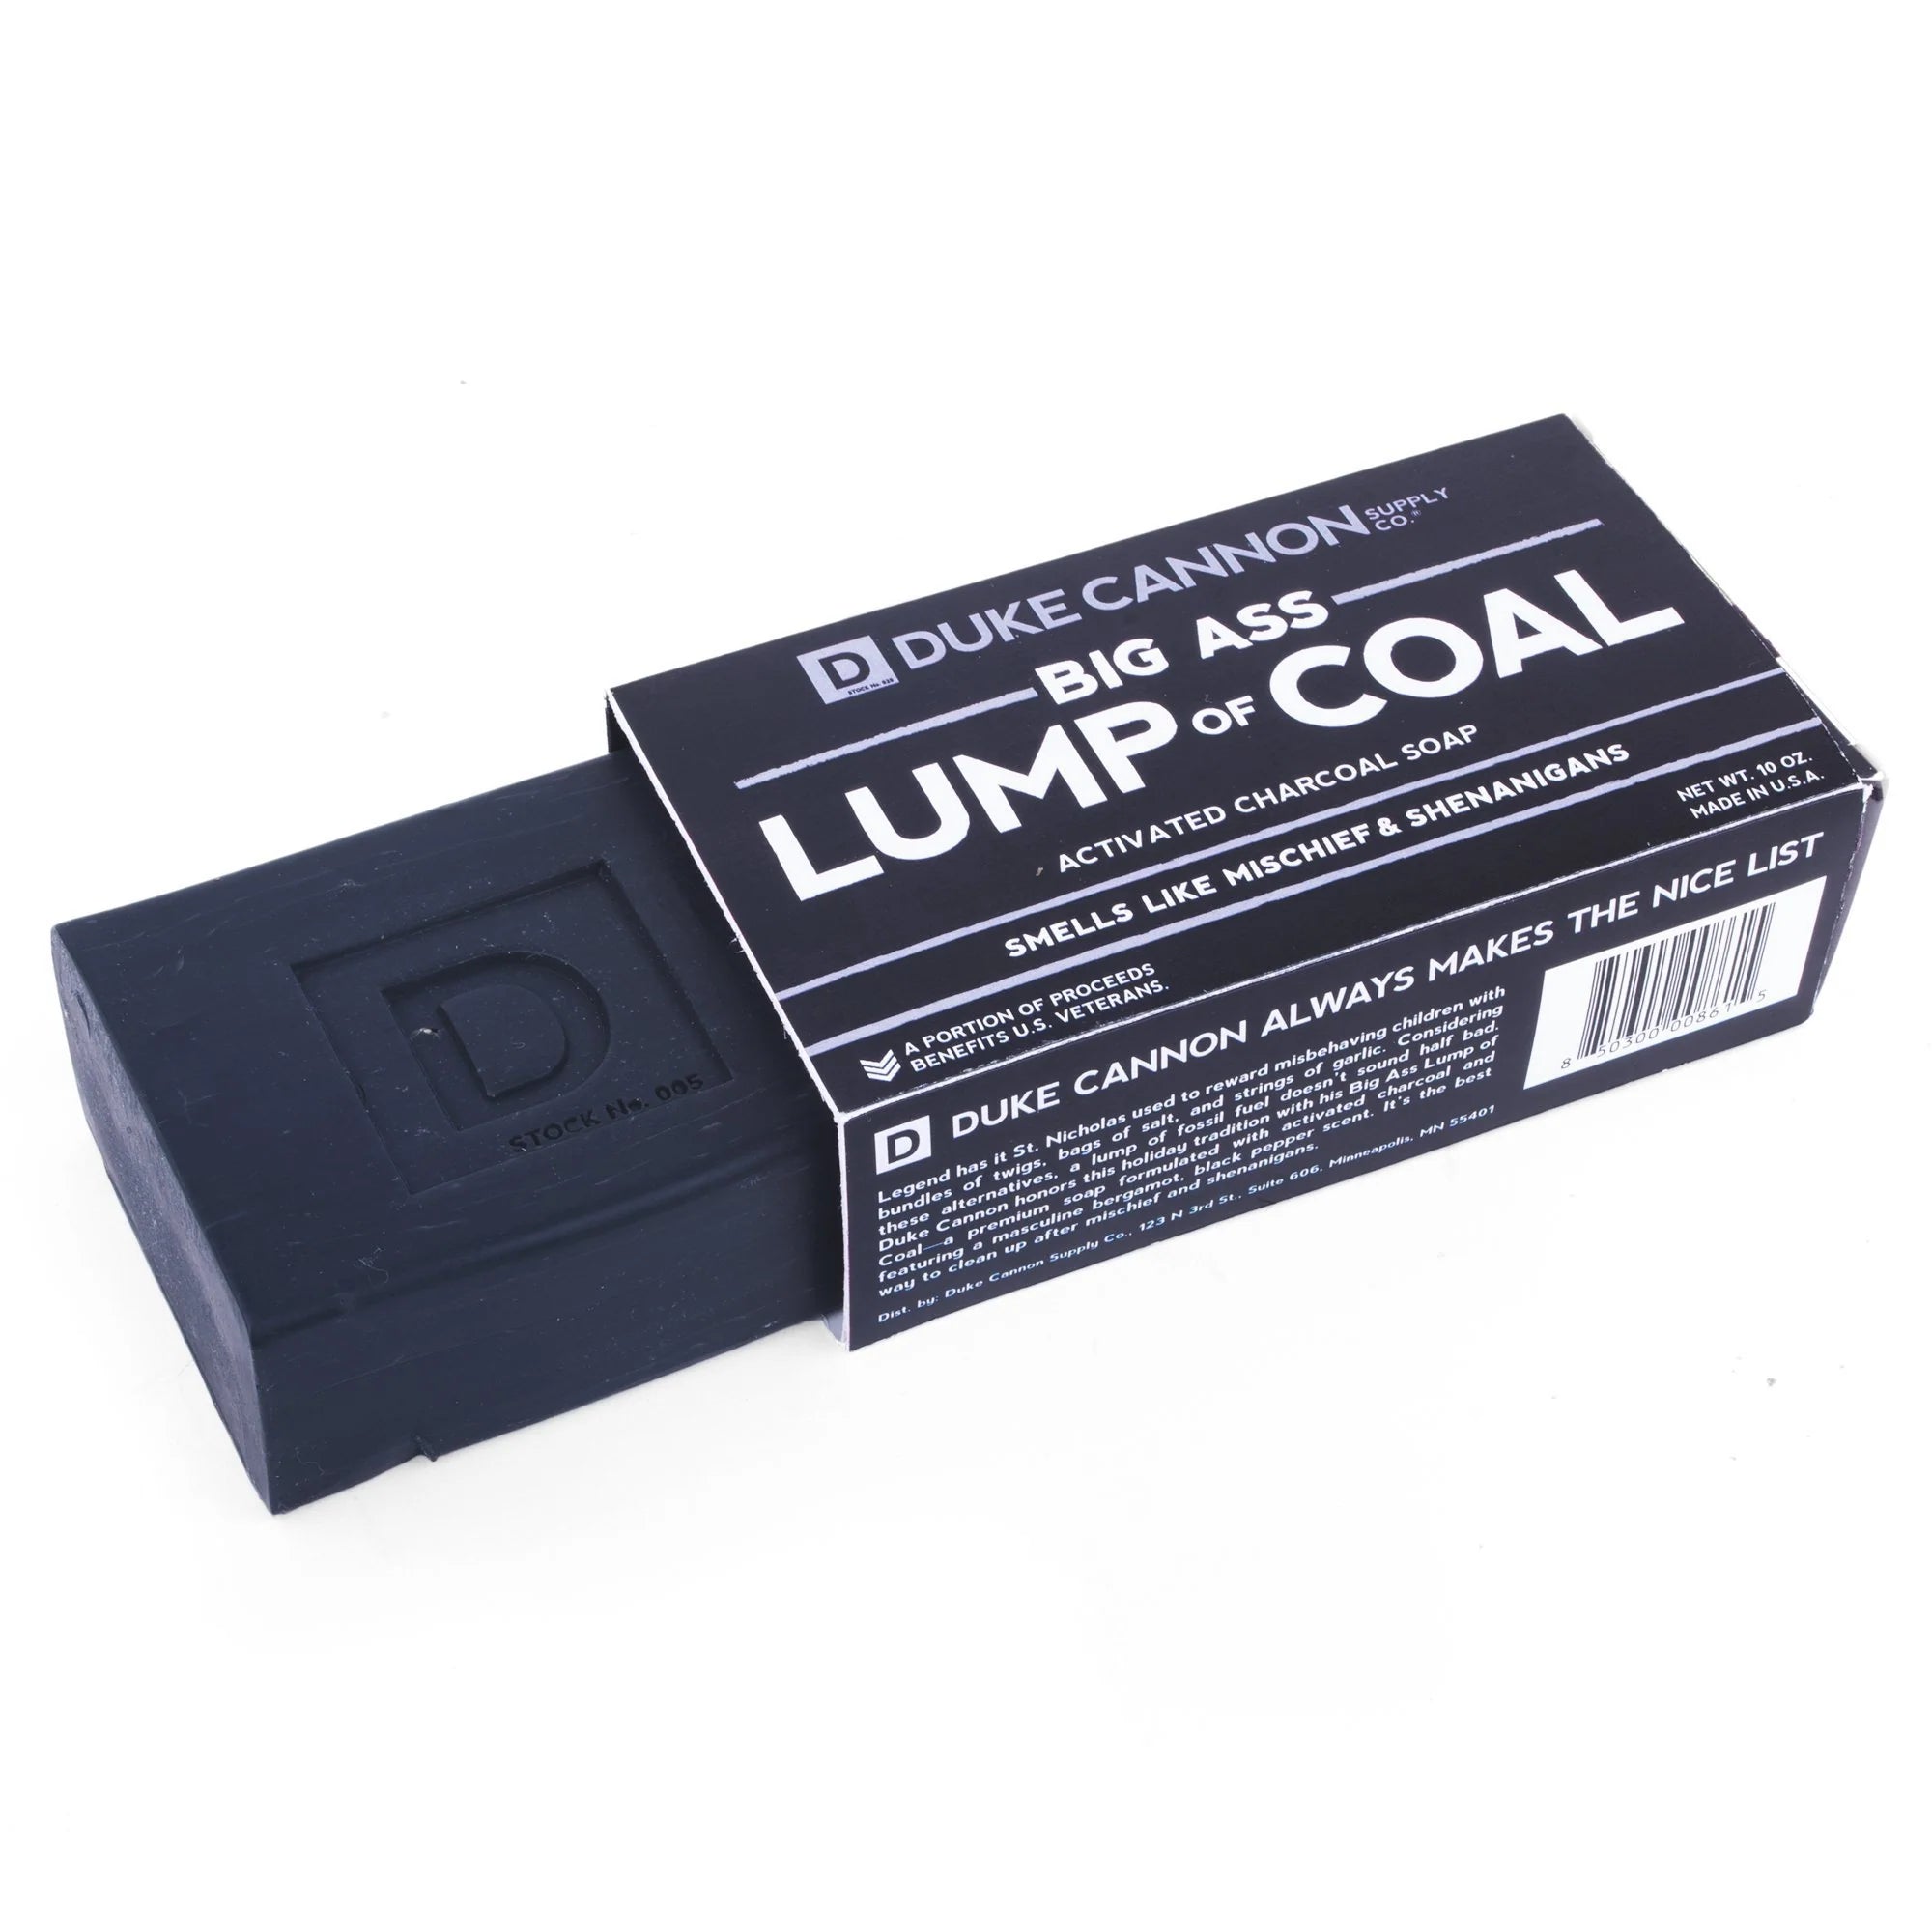 Big Ass Lump of Coal